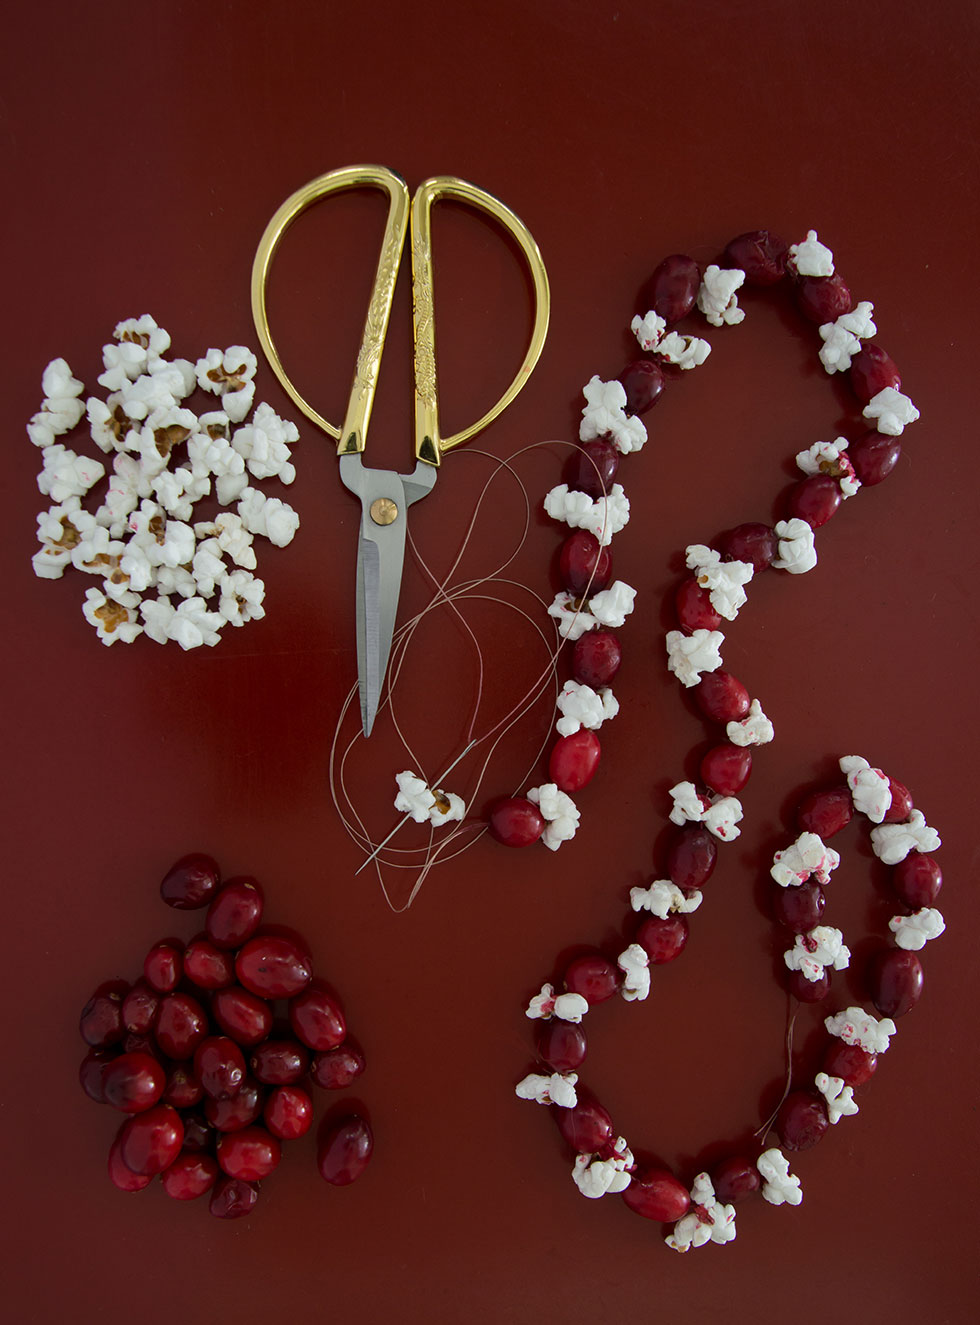 Cranberry und Popcorn zu einer Kette aufgefädelt